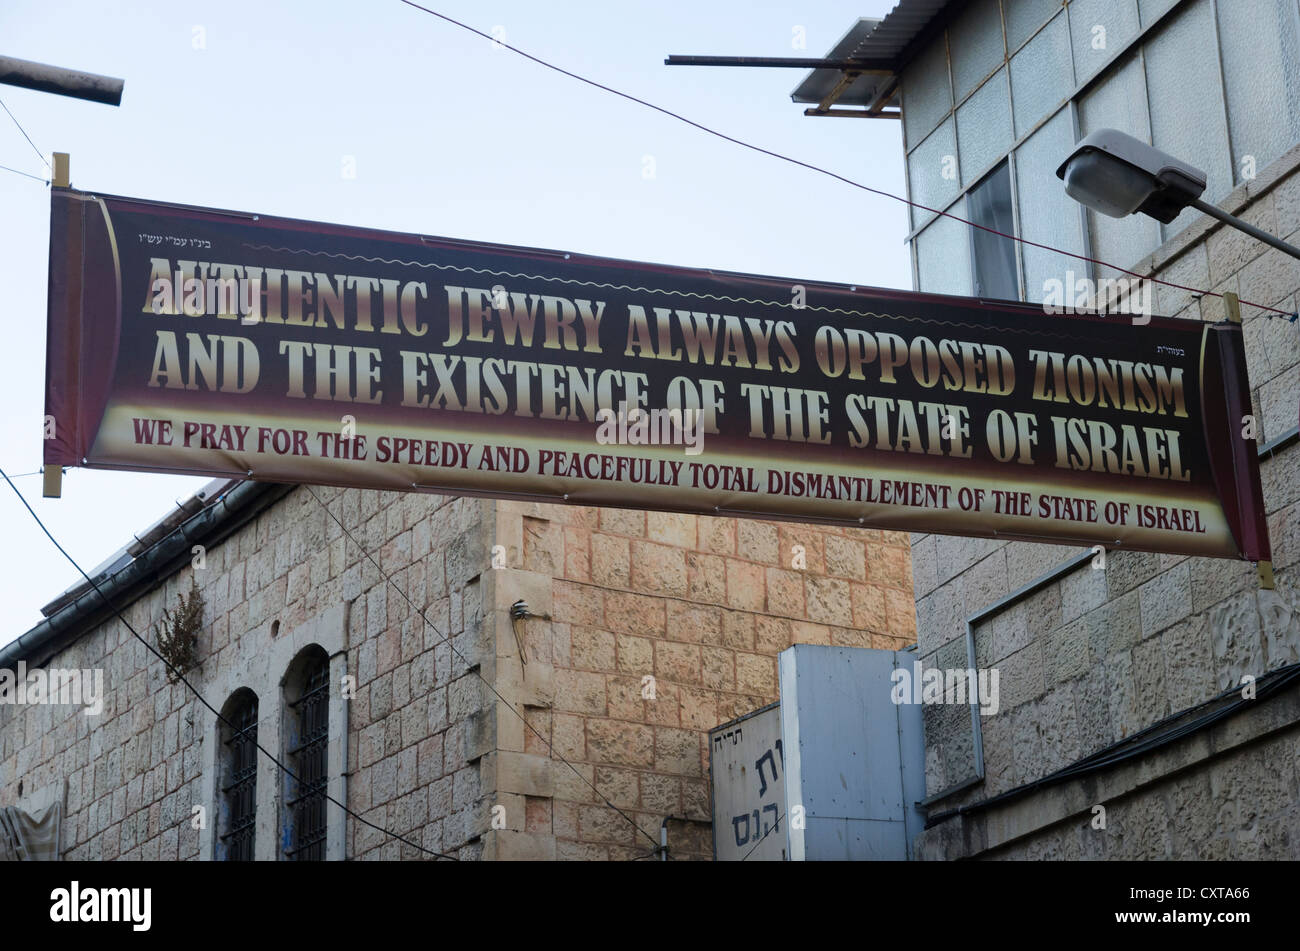 Anti sionist banner nelle strade di Mea Shearim ebraico quartiere ortodosso. Gerusalemme. Israele. Foto Stock